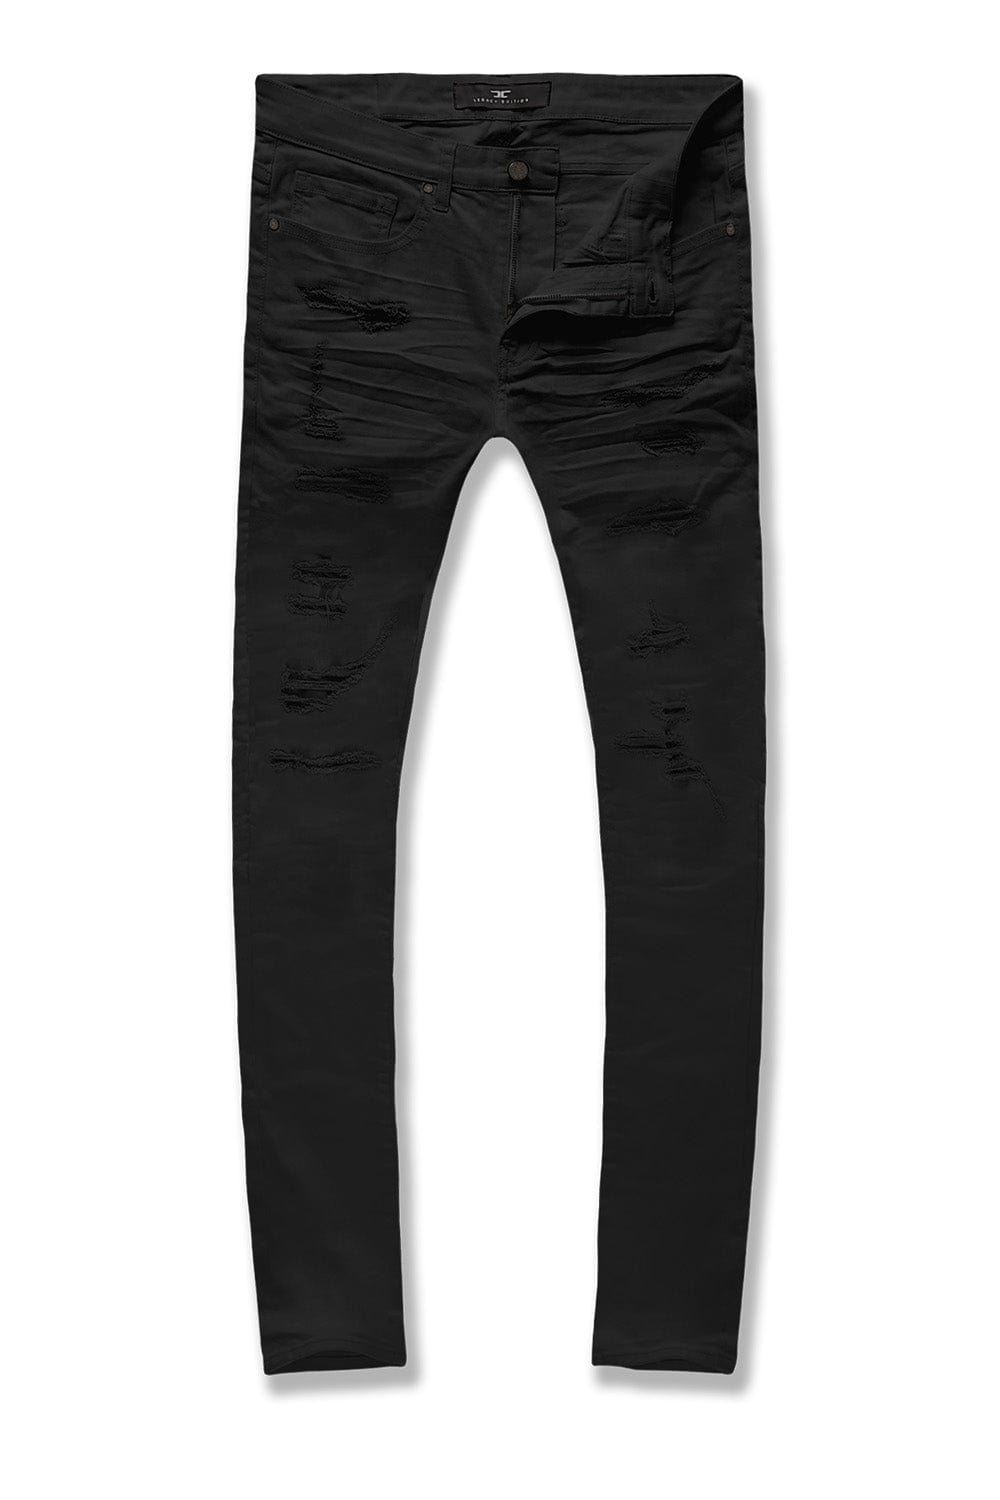 Jordan Craig Ross - Tribeca Twill Pants (Core Colors) Black / 28/32